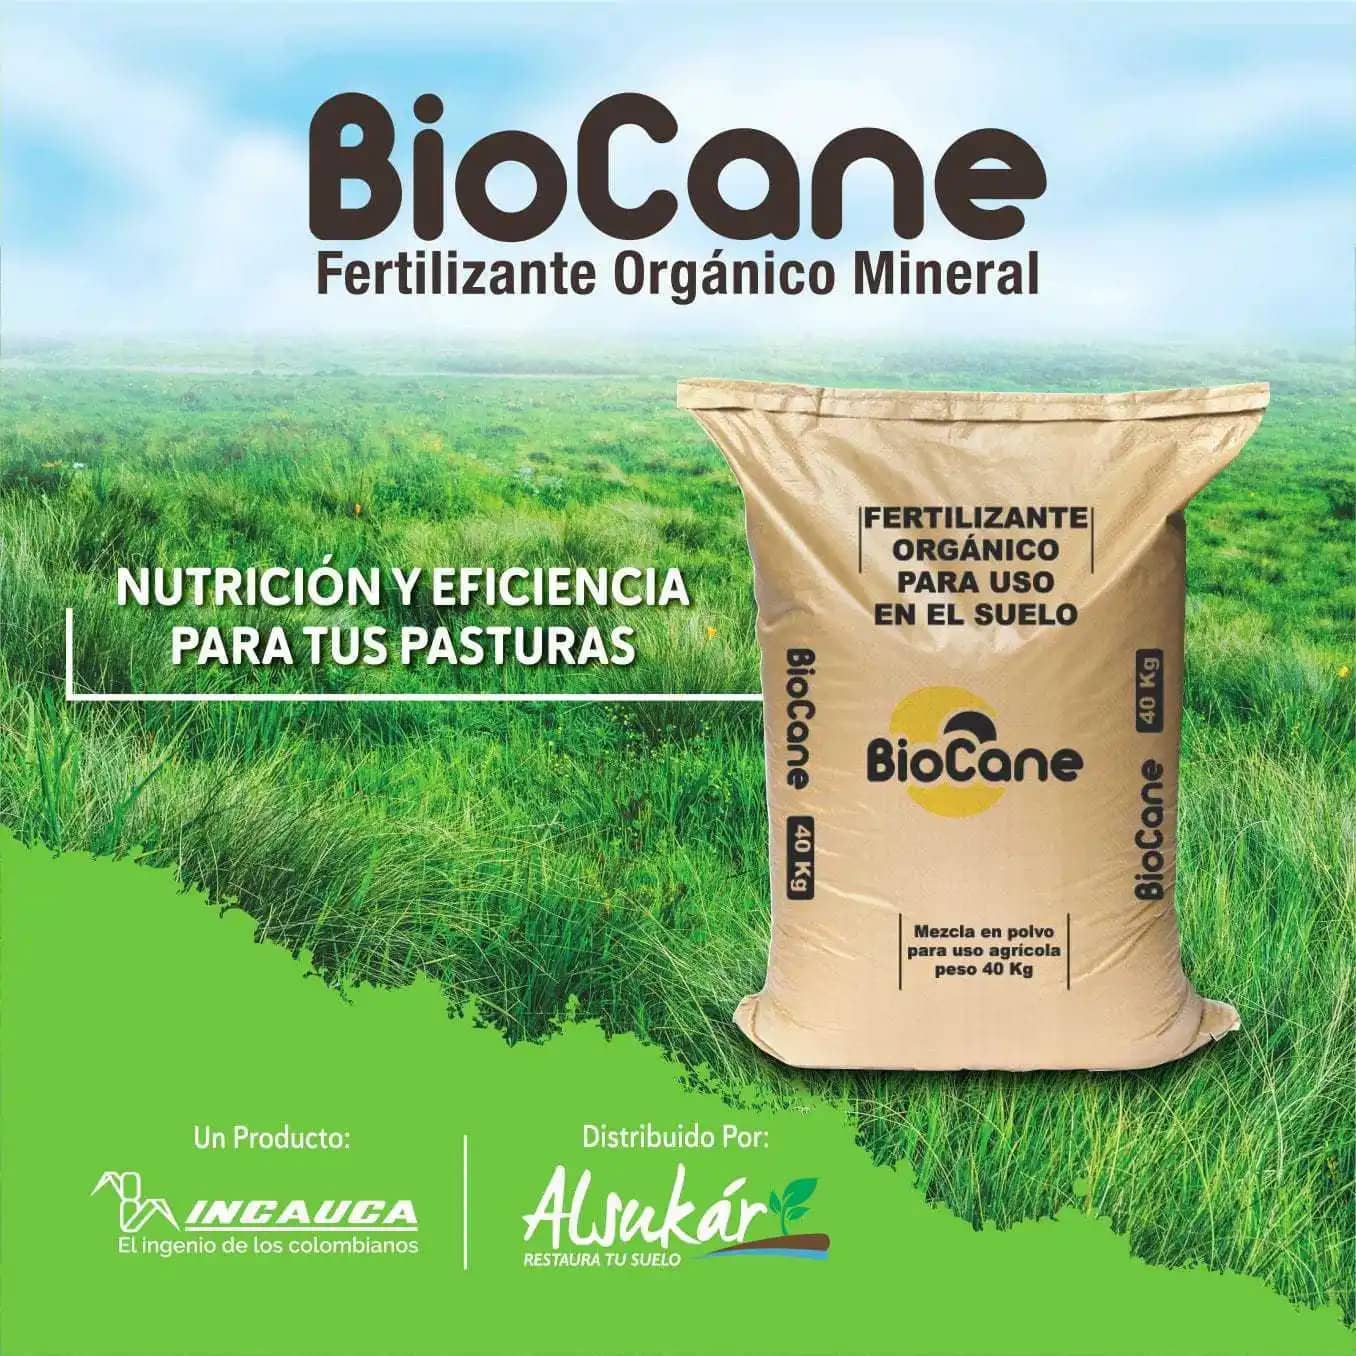 Fertilizante orgánico mineral Biocane